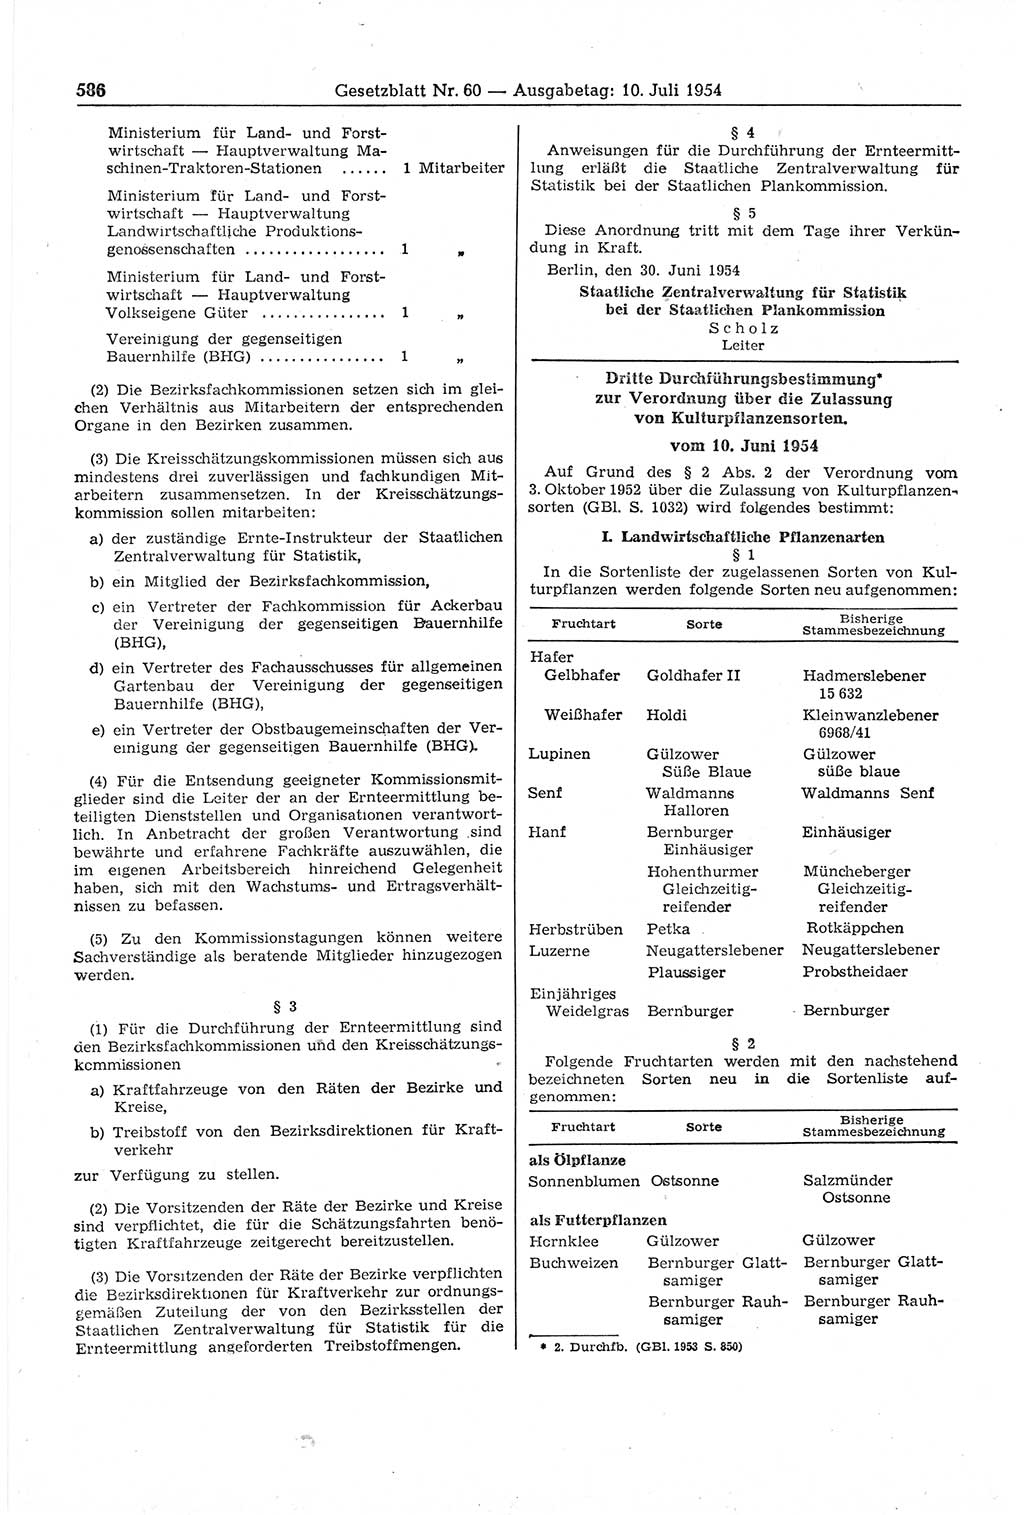 Gesetzblatt (GBl.) der Deutschen Demokratischen Republik (DDR) 1954, Seite 586 (GBl. DDR 1954, S. 586)